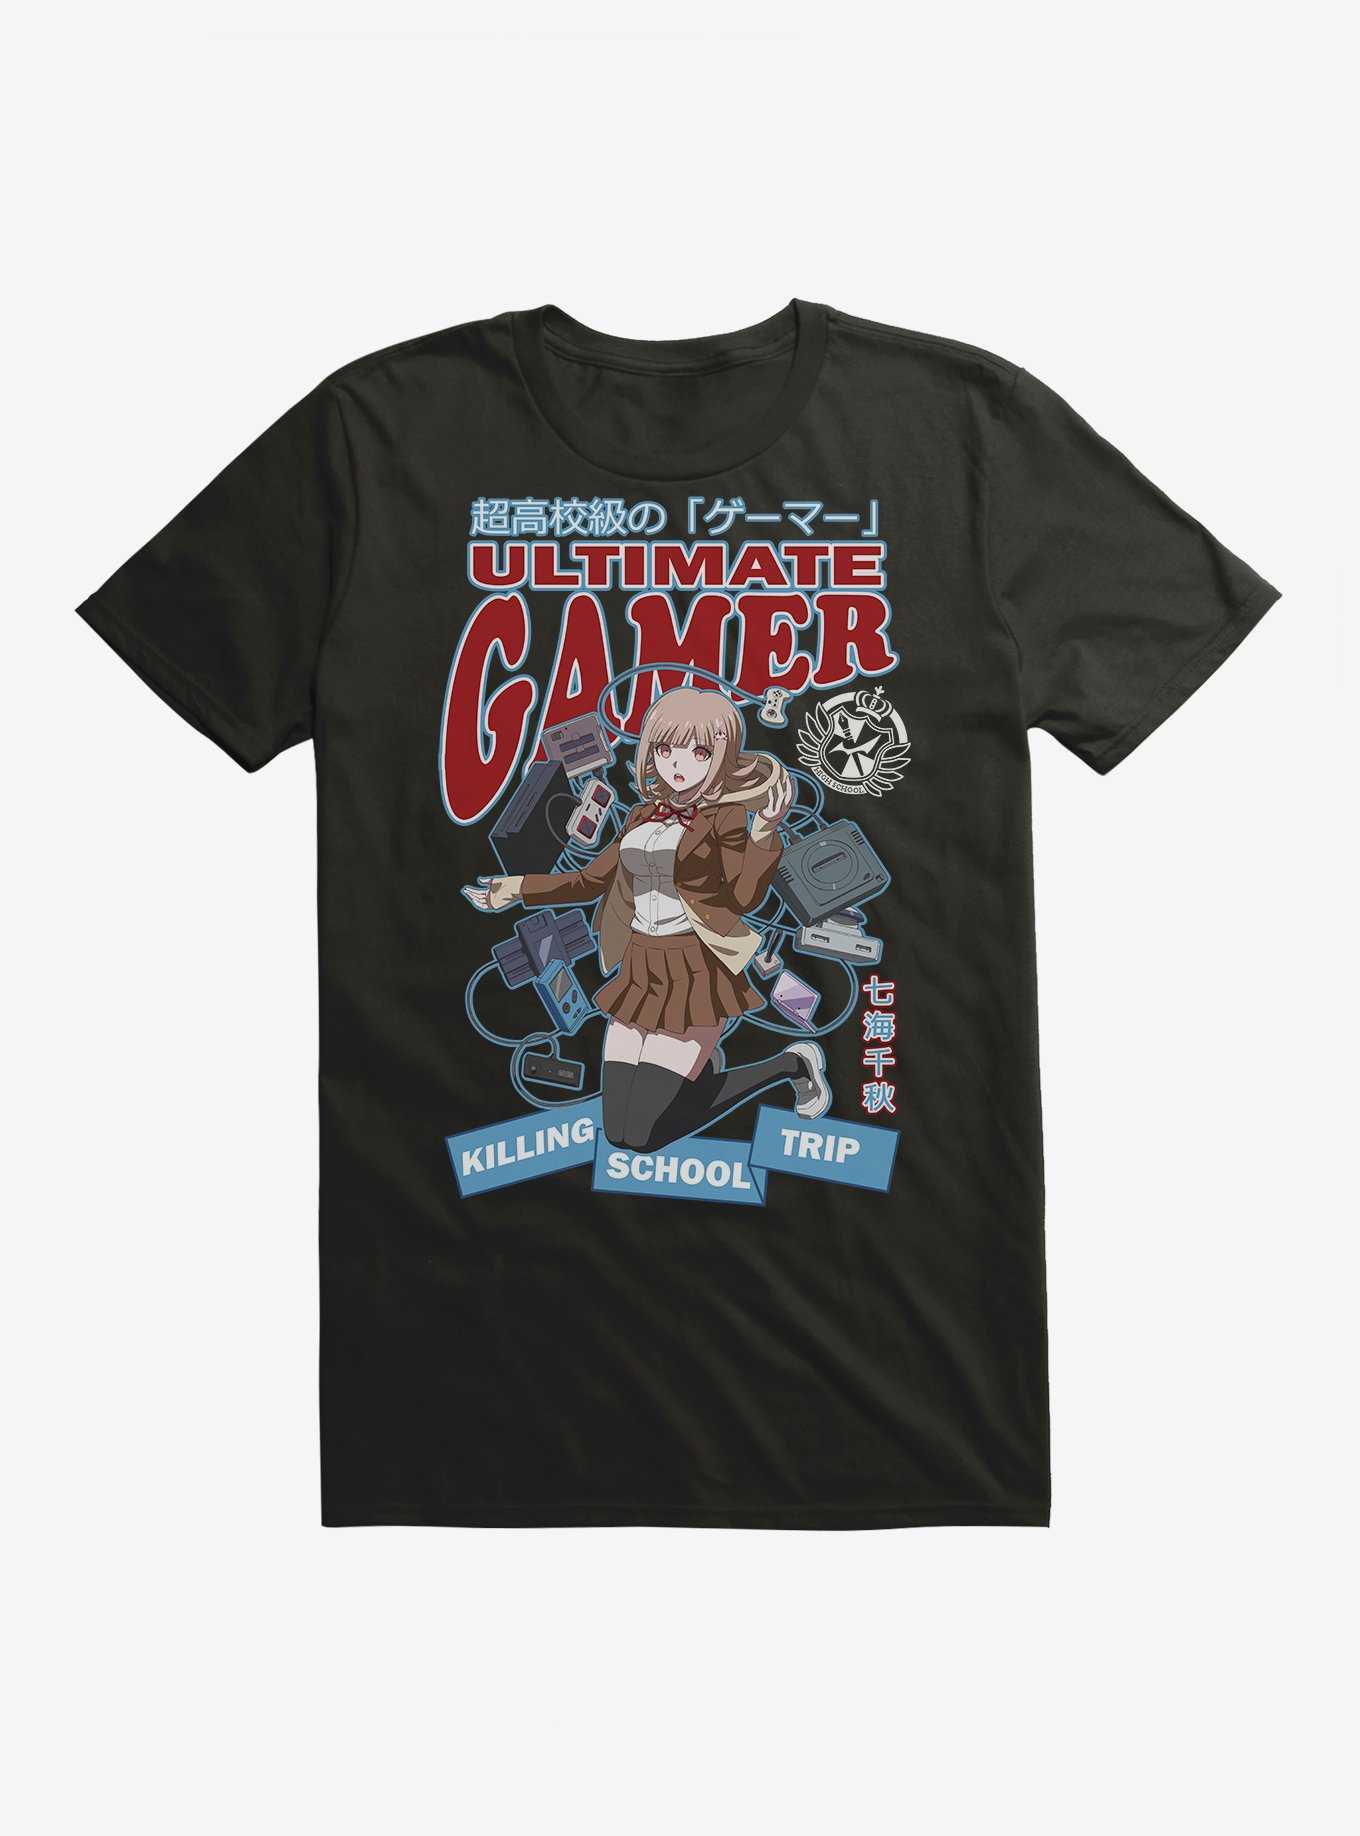 Danganronpa 3 Ultimate Gamer T-Shirt, , hi-res